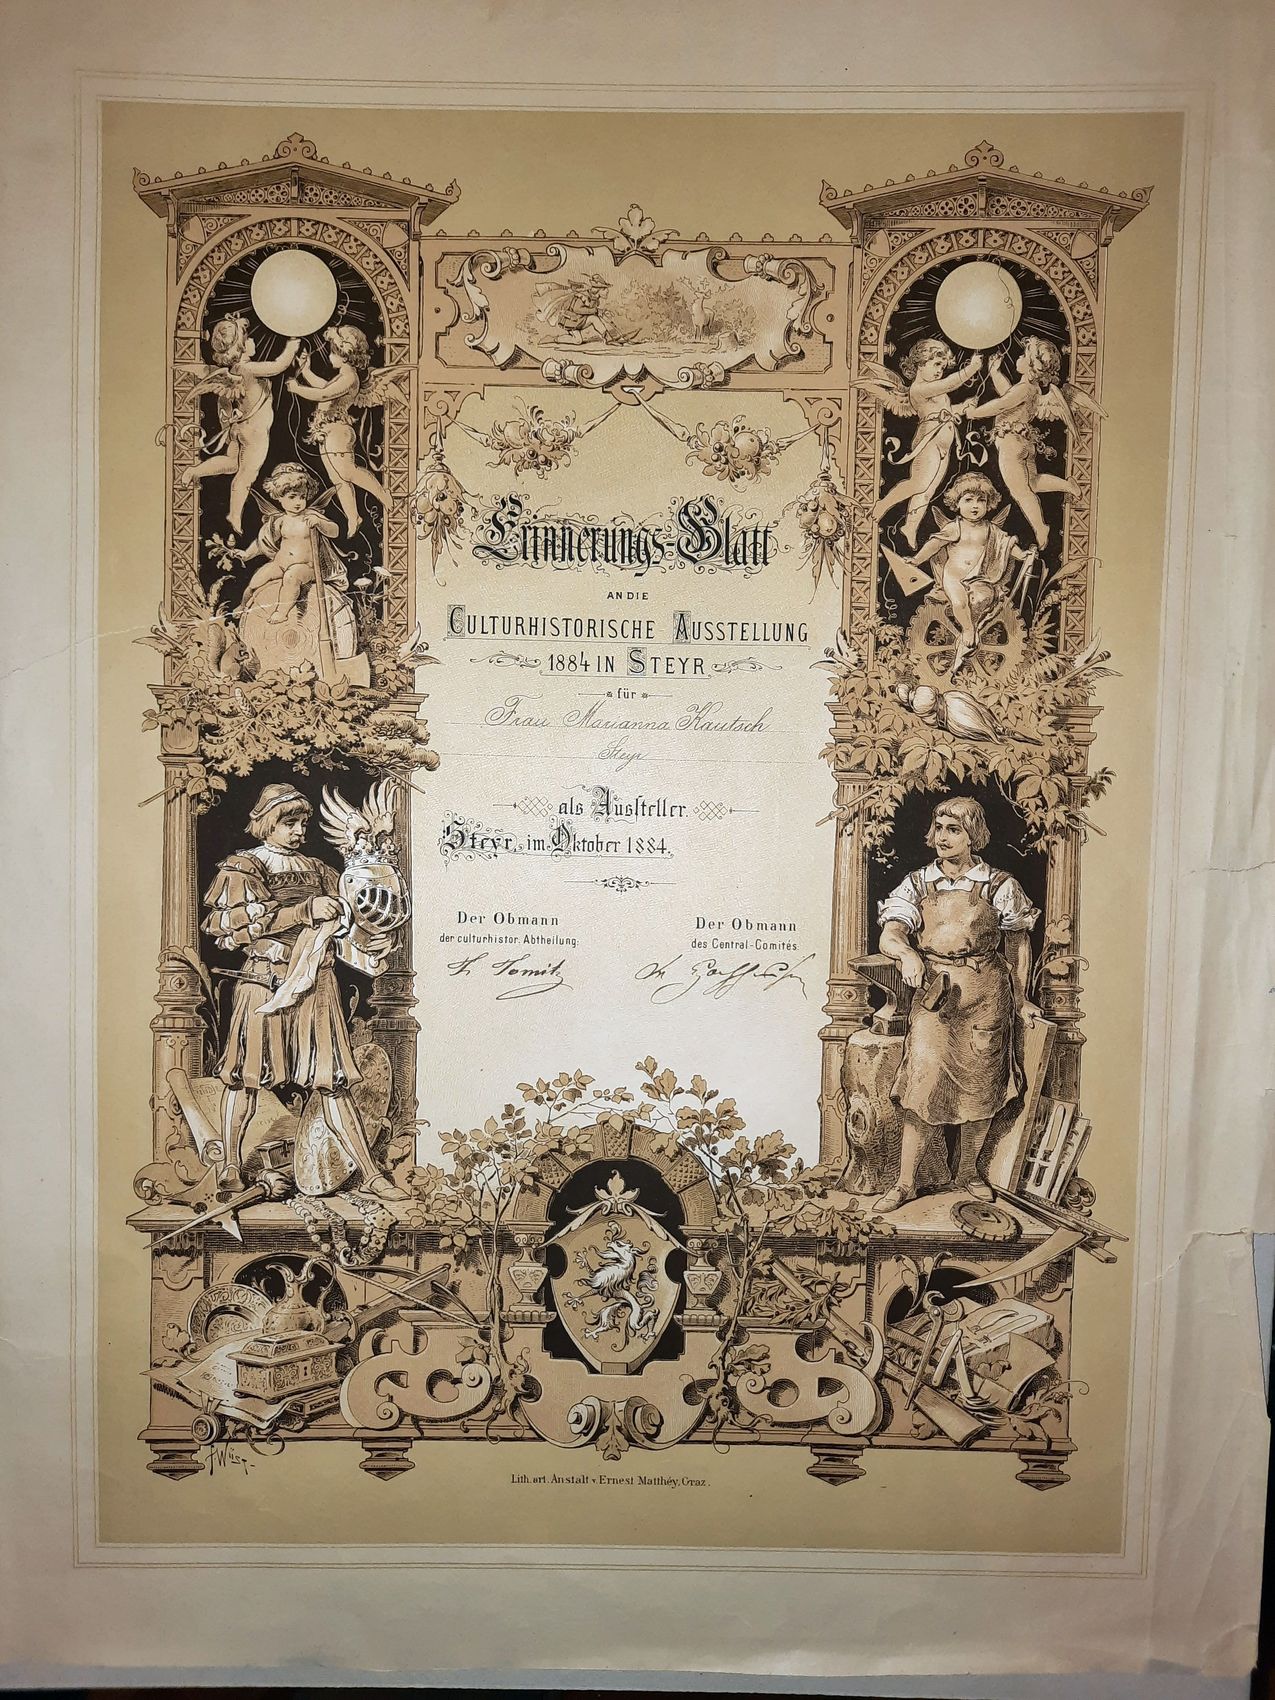  - Erinnerungblatt an die Culturhistorische Ausstellung 1884 in Steyr fr (handschriftlich eingetragen:) Frau Marianna Kautsch Steyr als Aussteller..